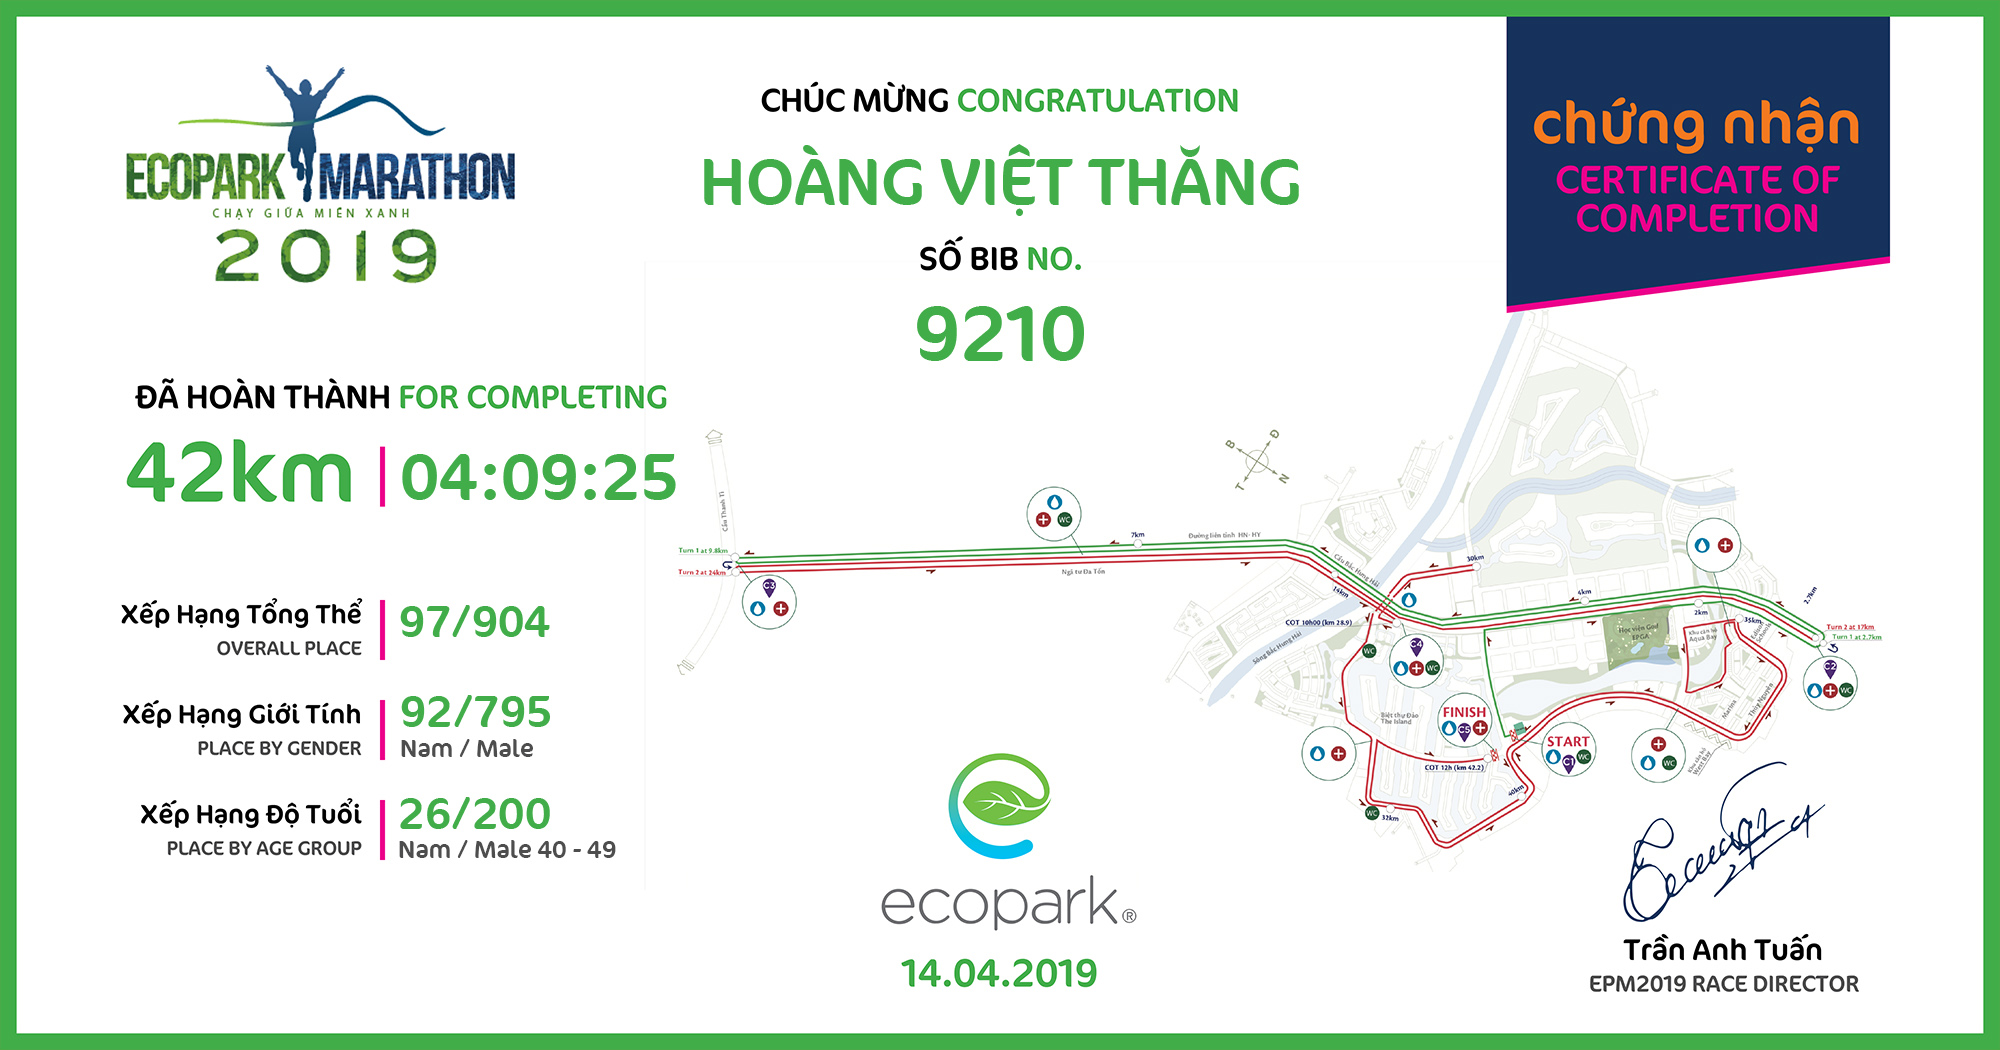 9210 - Hoàng Việt Thăng